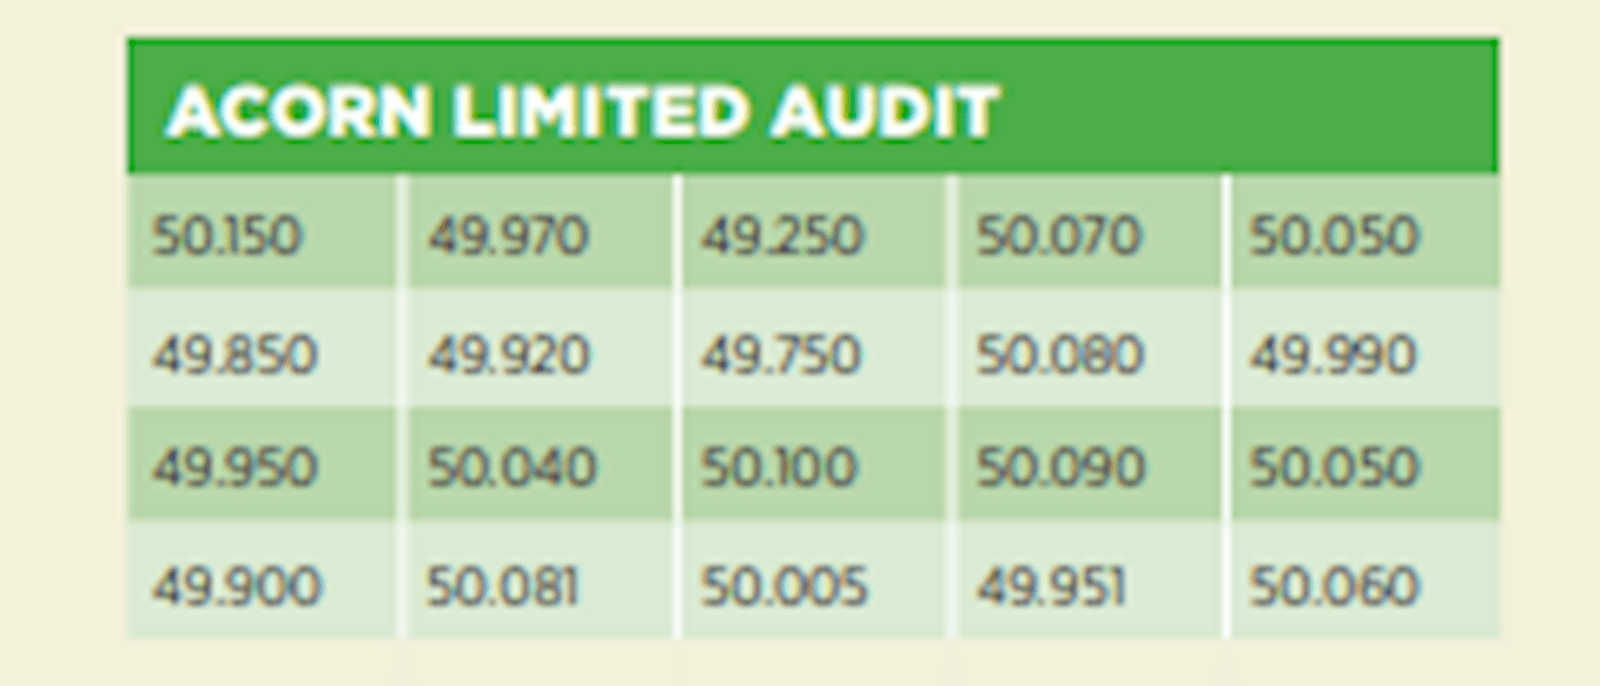 Figure 1: Acorn Limited Audit